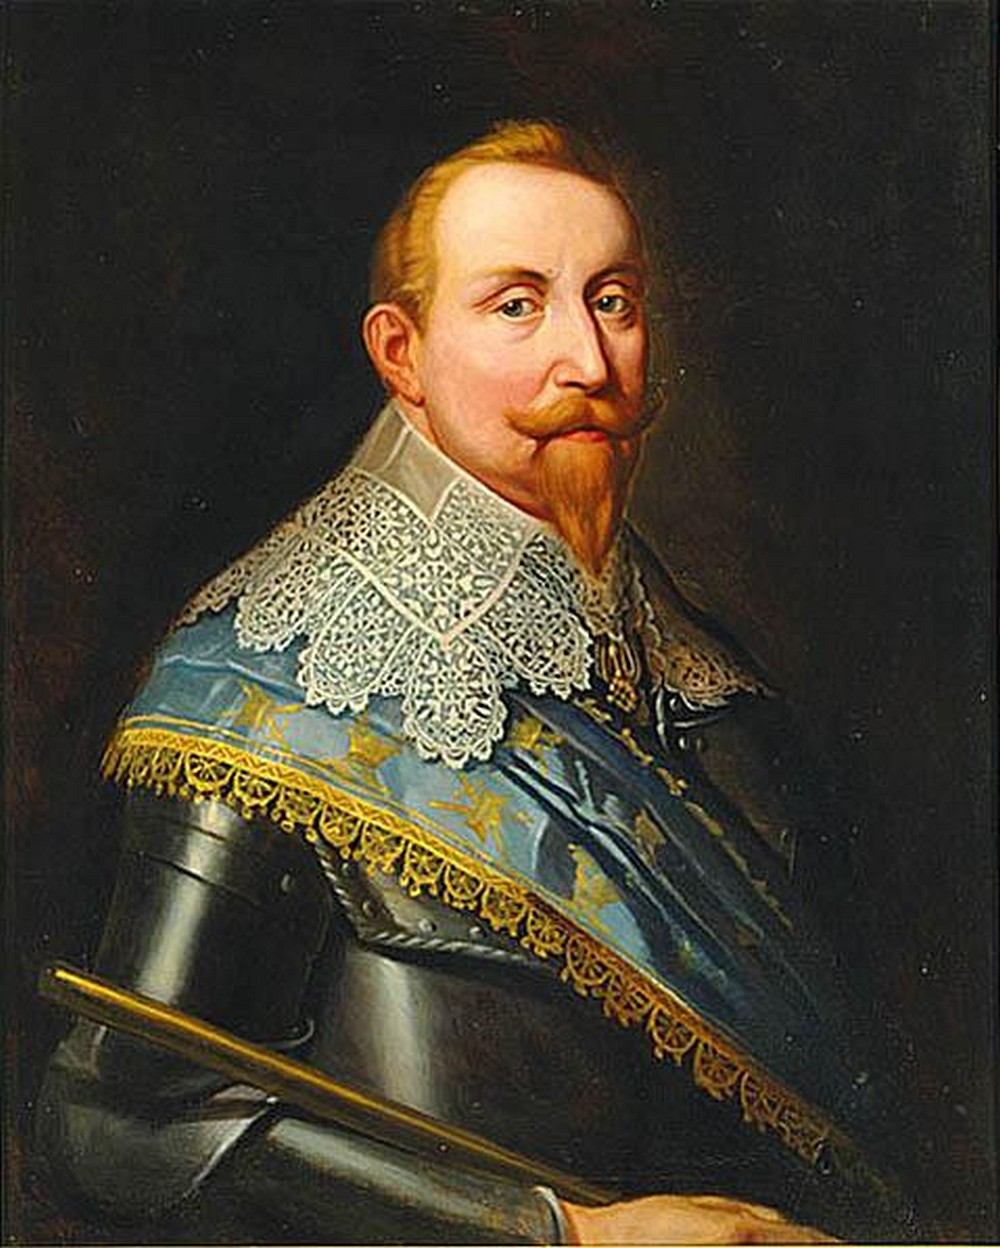 Portret króla szwedzkiego Gustawa II Adolfa